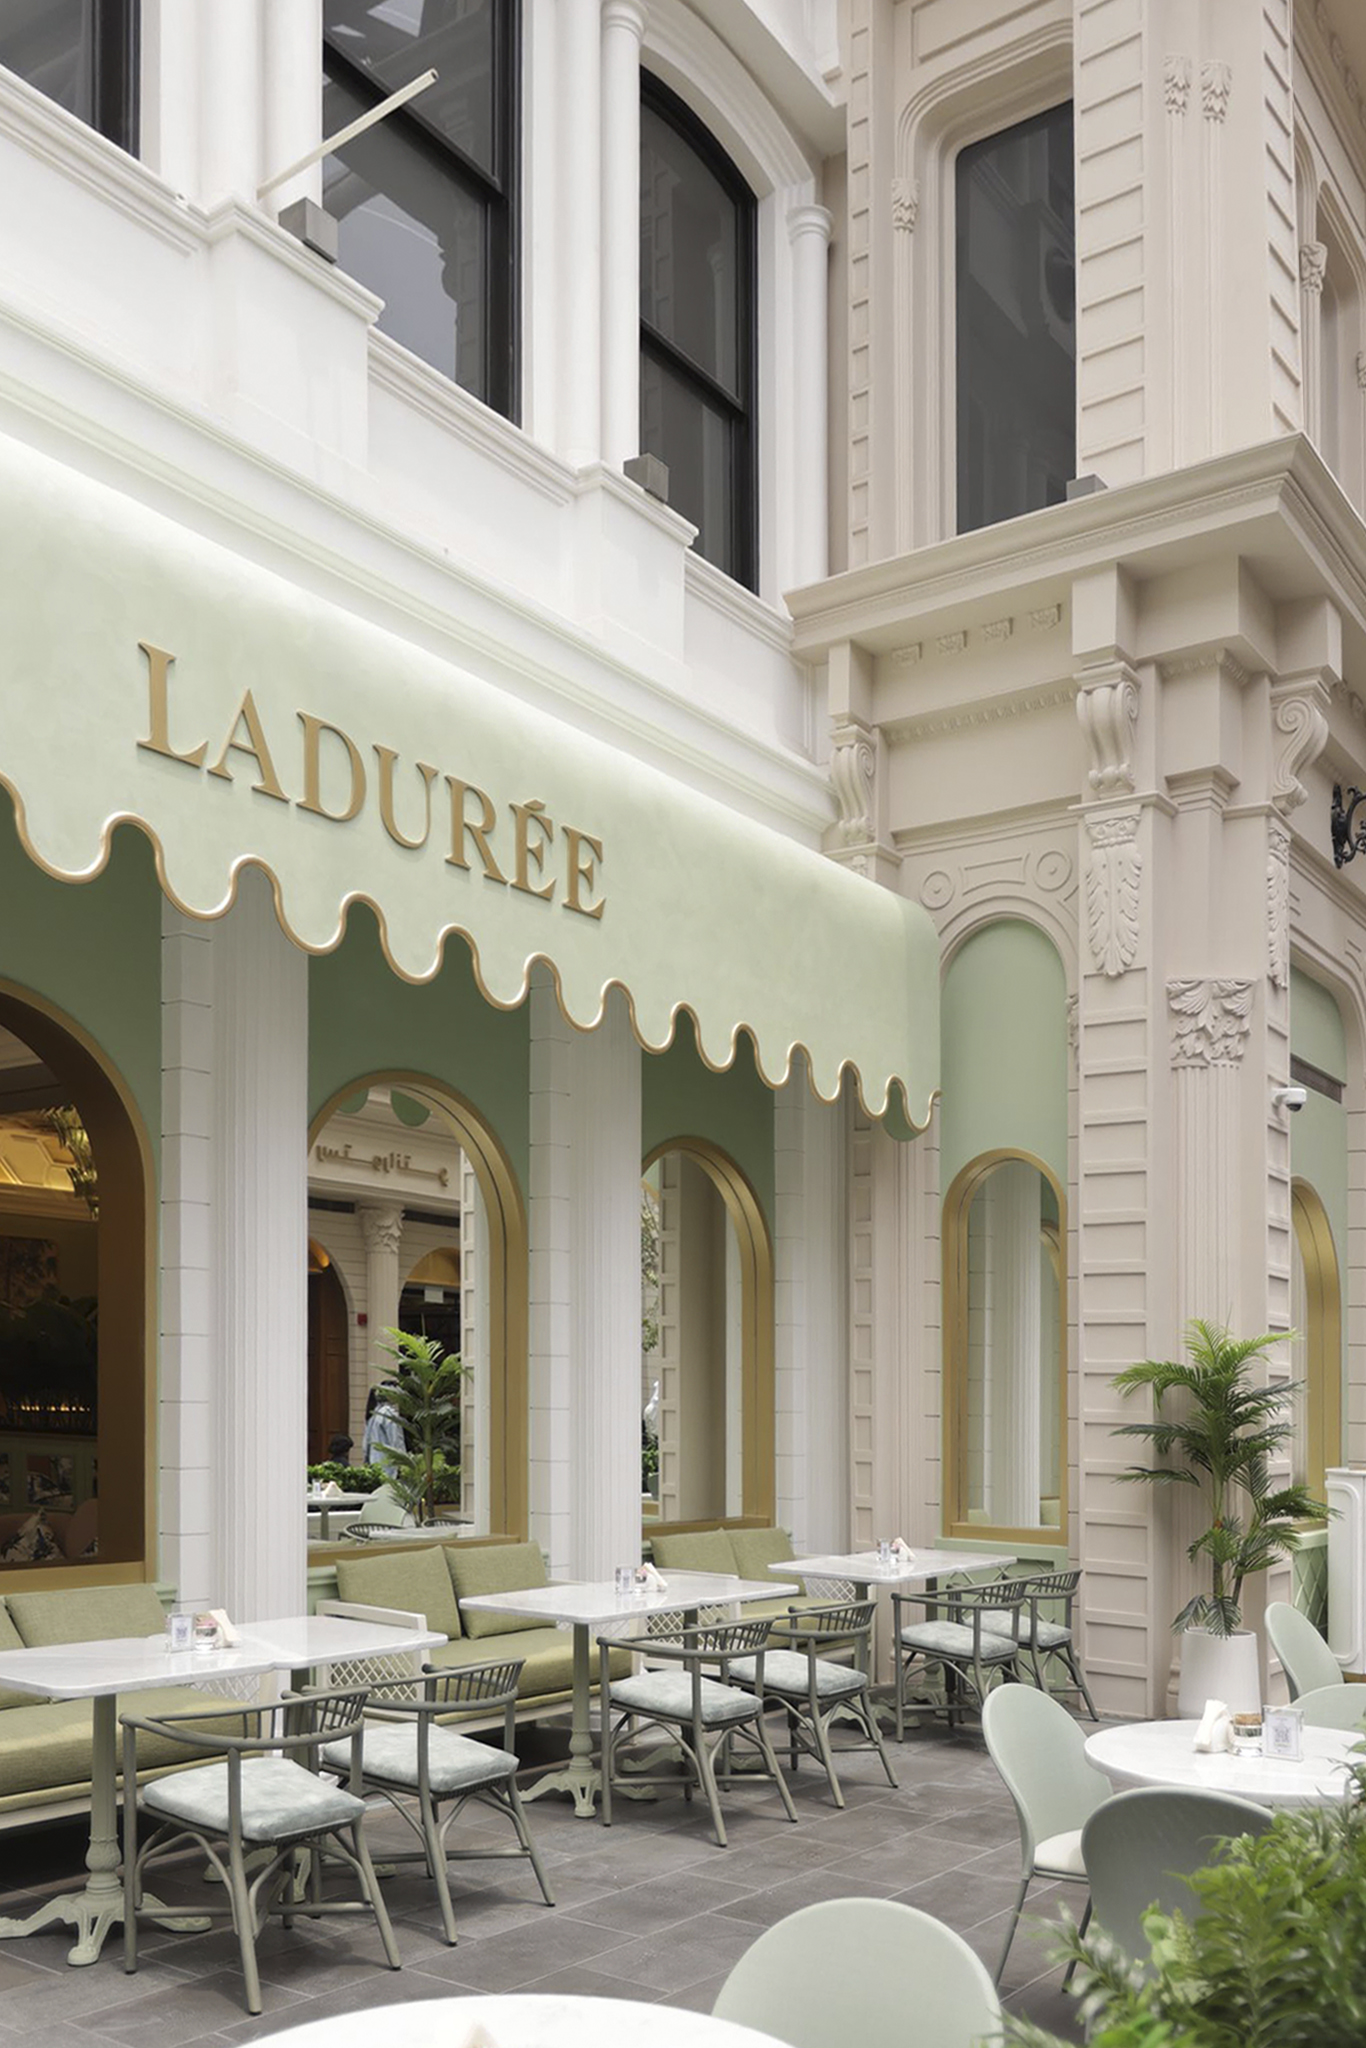 projects - indoor - restaurants - mediterranean furniture and macarons in ladurée